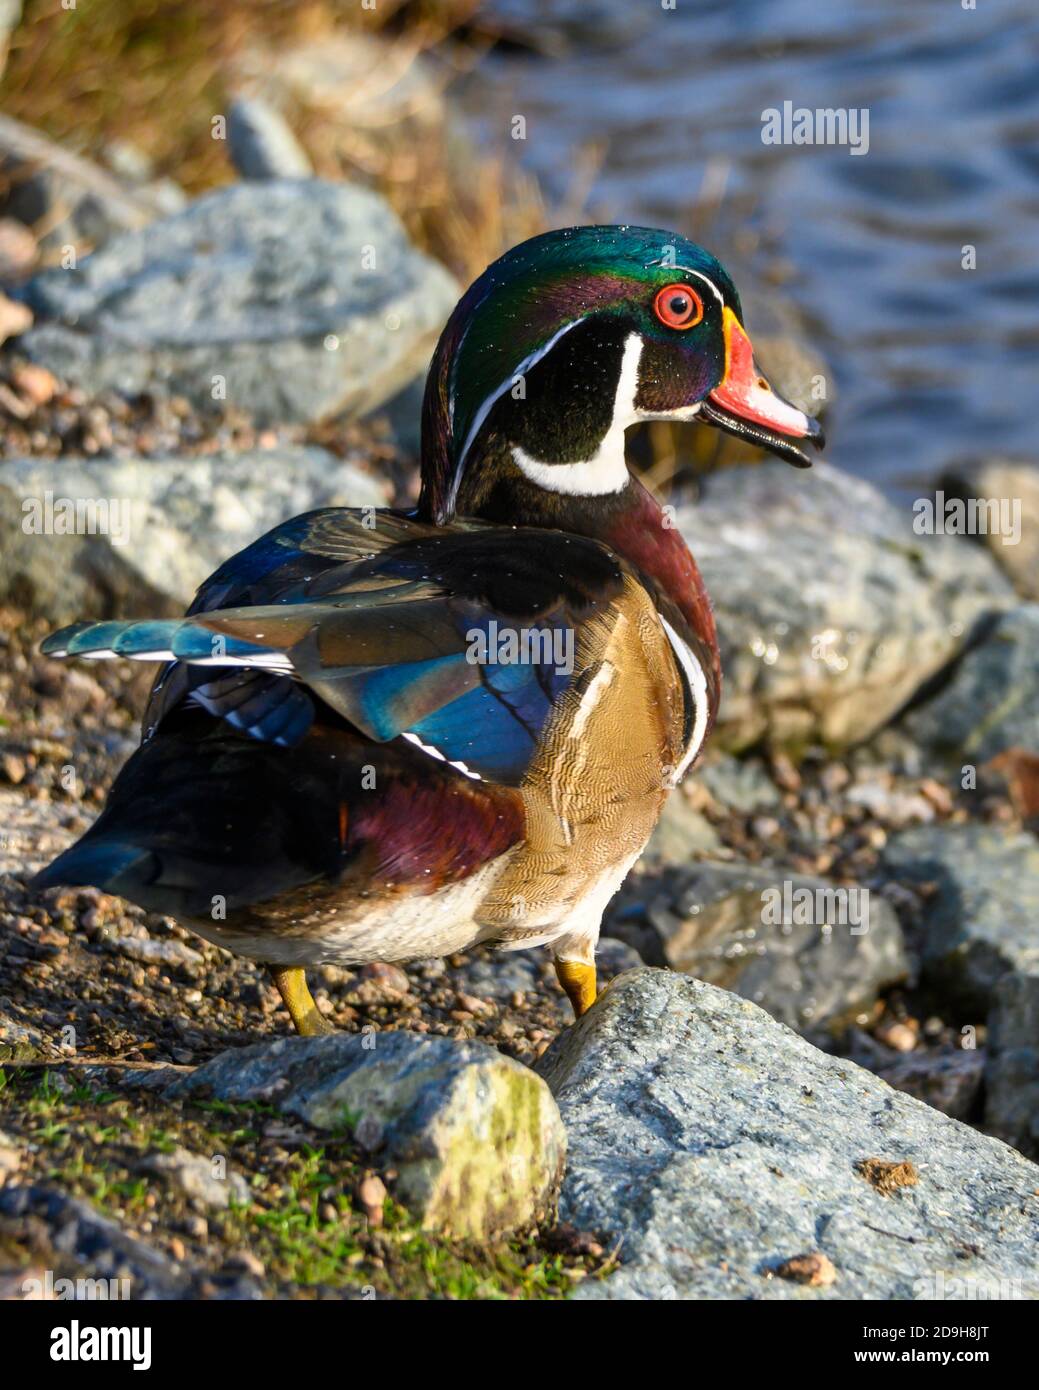 Magnifique canard en bois mâle sur les rochers du lac Orange et corps bordeaux. Tête verte, bleue et violette avec yeux rouges et bec rouge. Banque D'Images